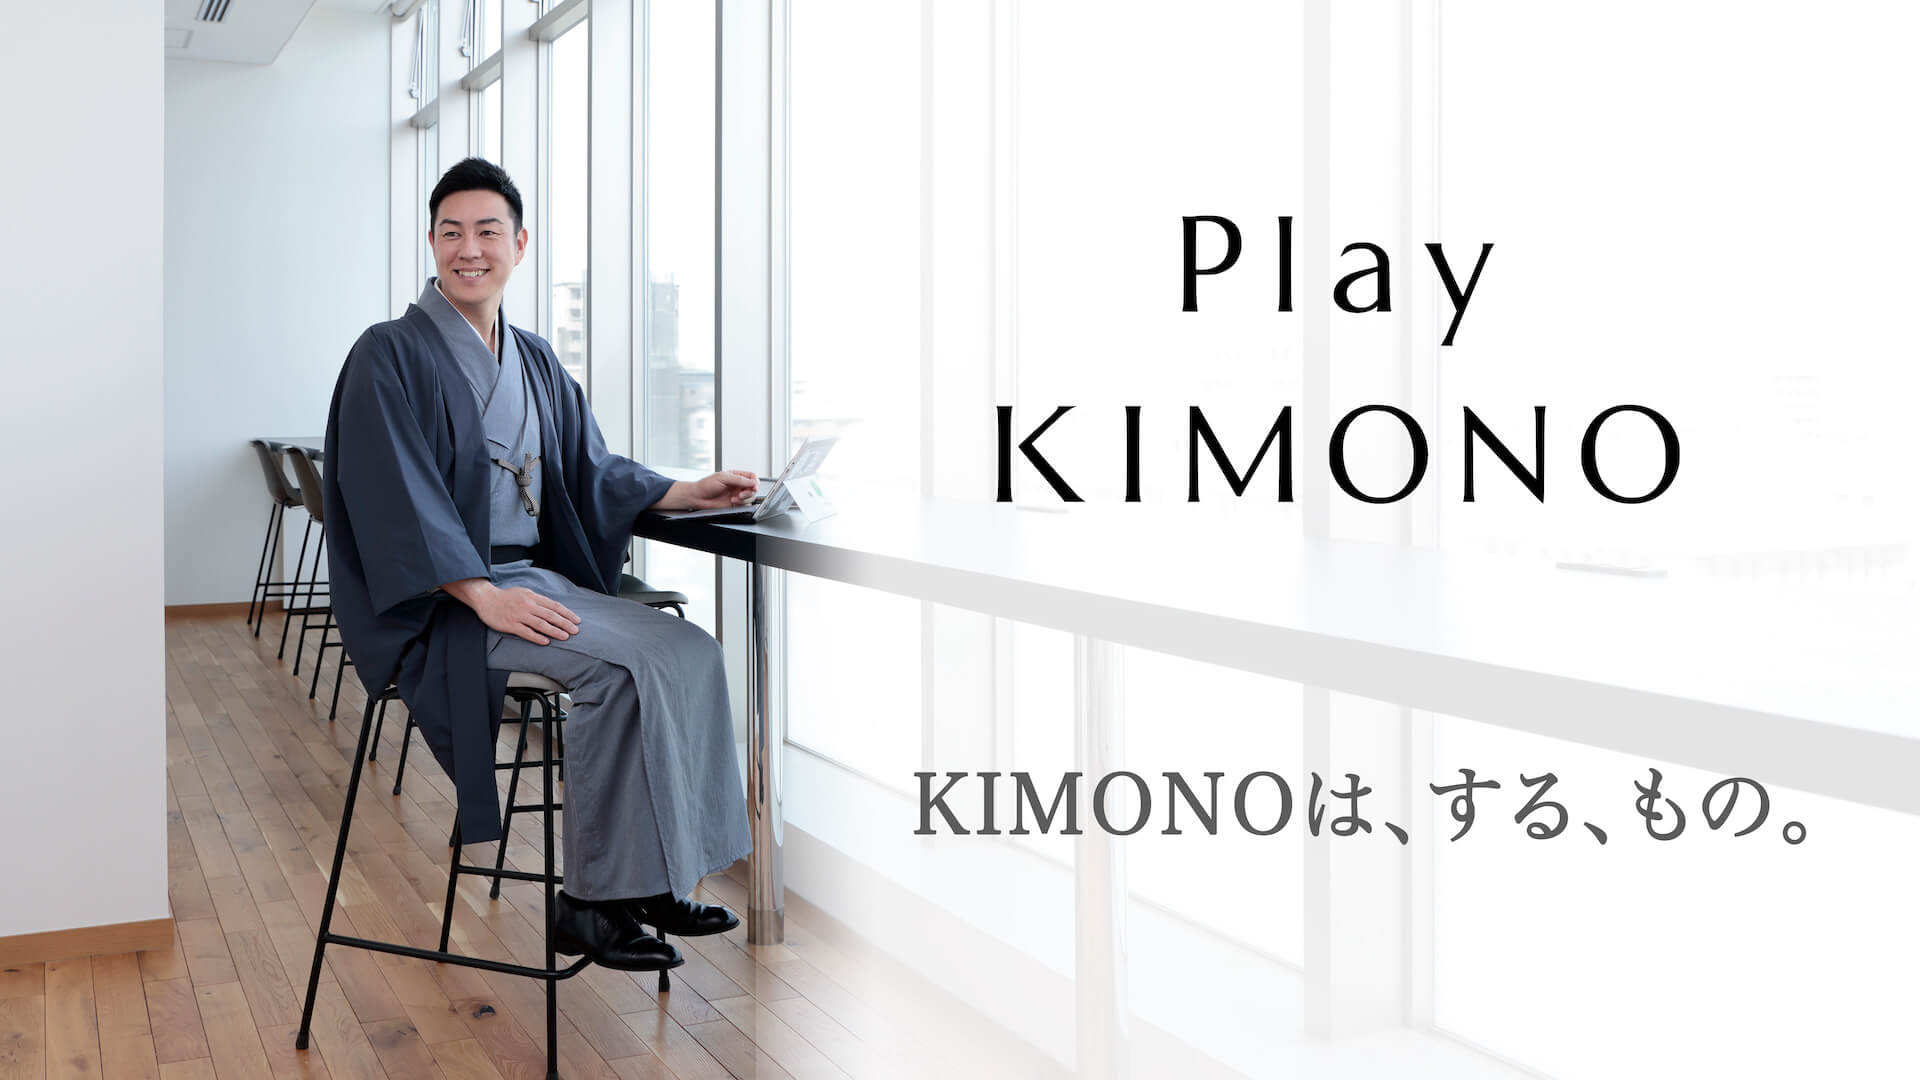 着心地、見た目は高級着物。京都の呉服屋が作る従来の価格の1/7以下を実現した「Play KIMONO」8月末販売開始